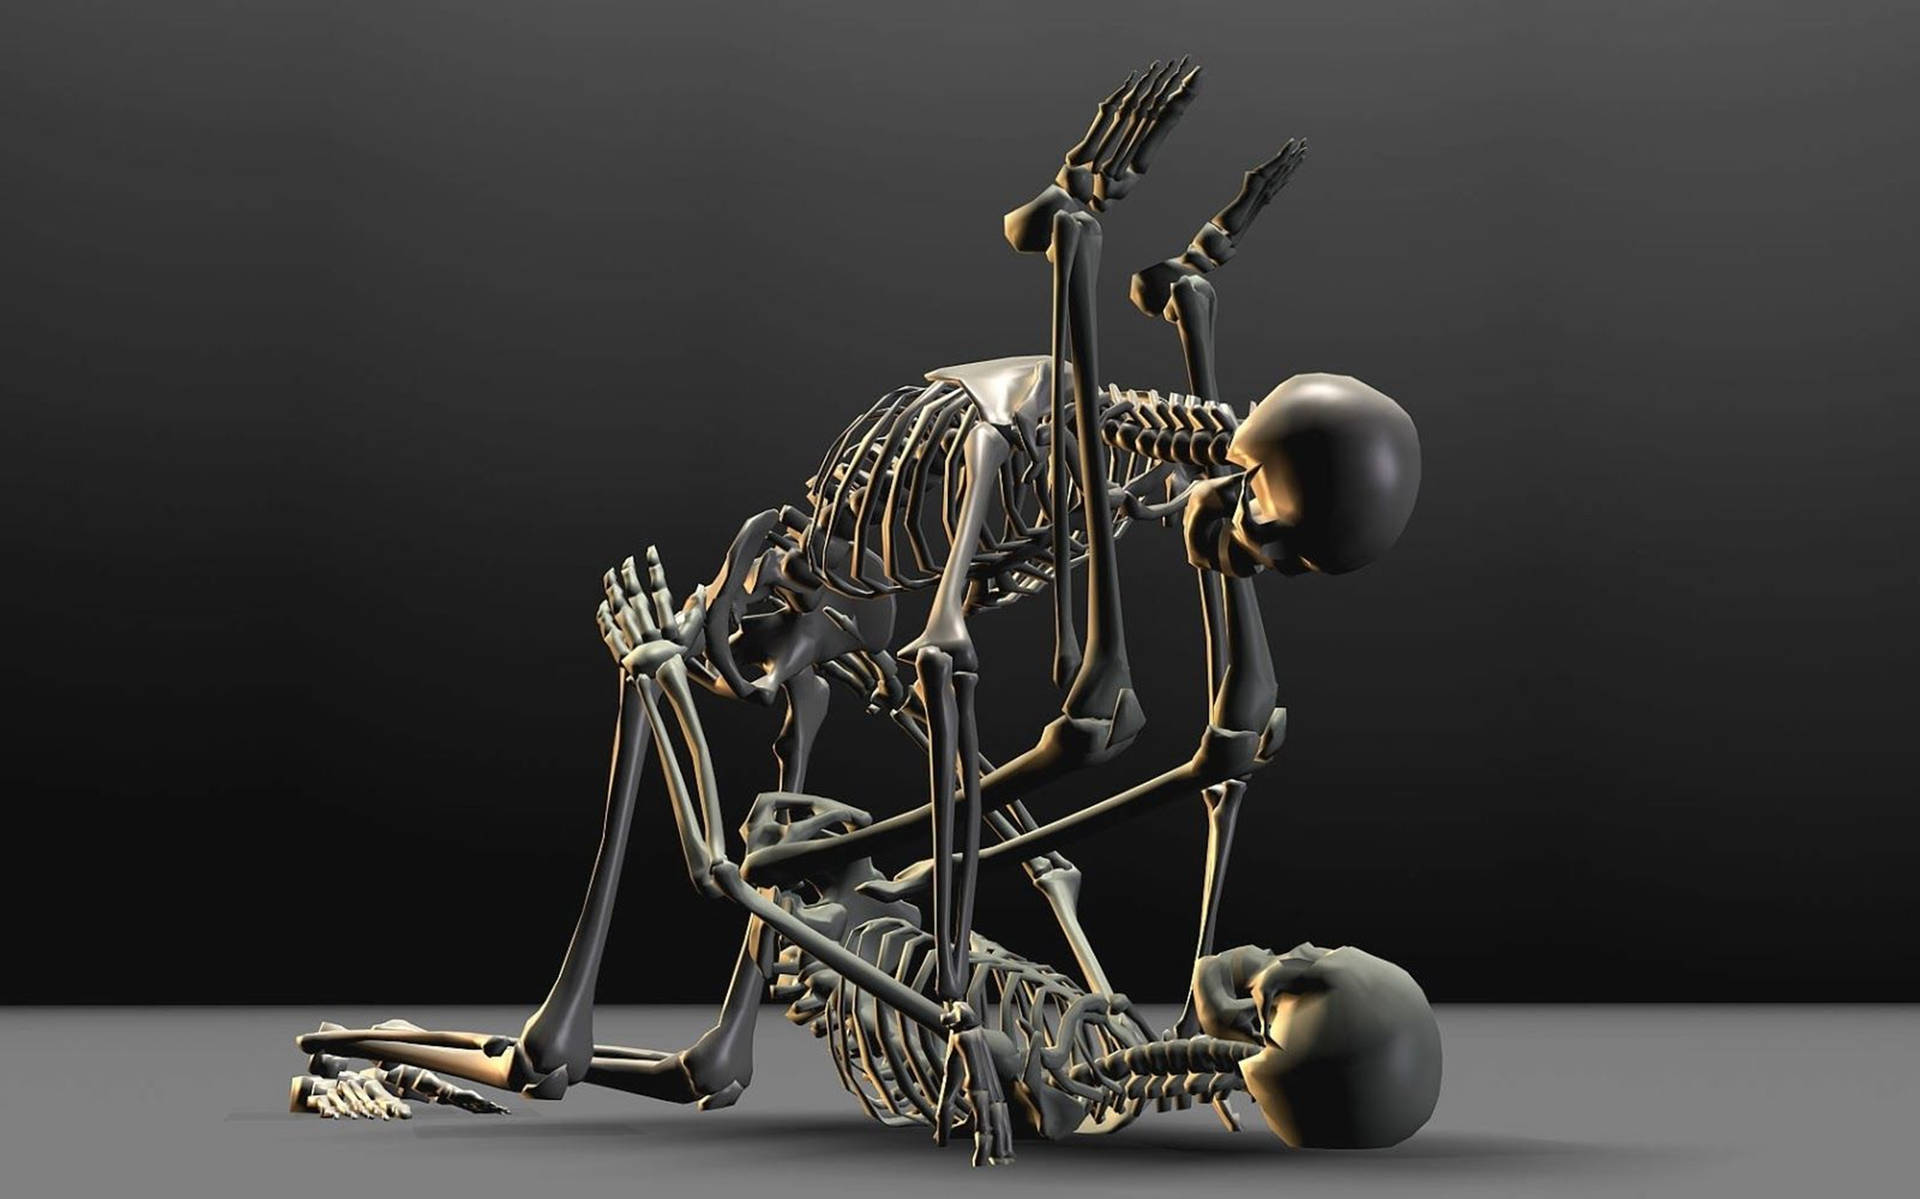 Free Skeleton Wallpaper Downloads, [400+] Skeleton Wallpapers for FREE |  